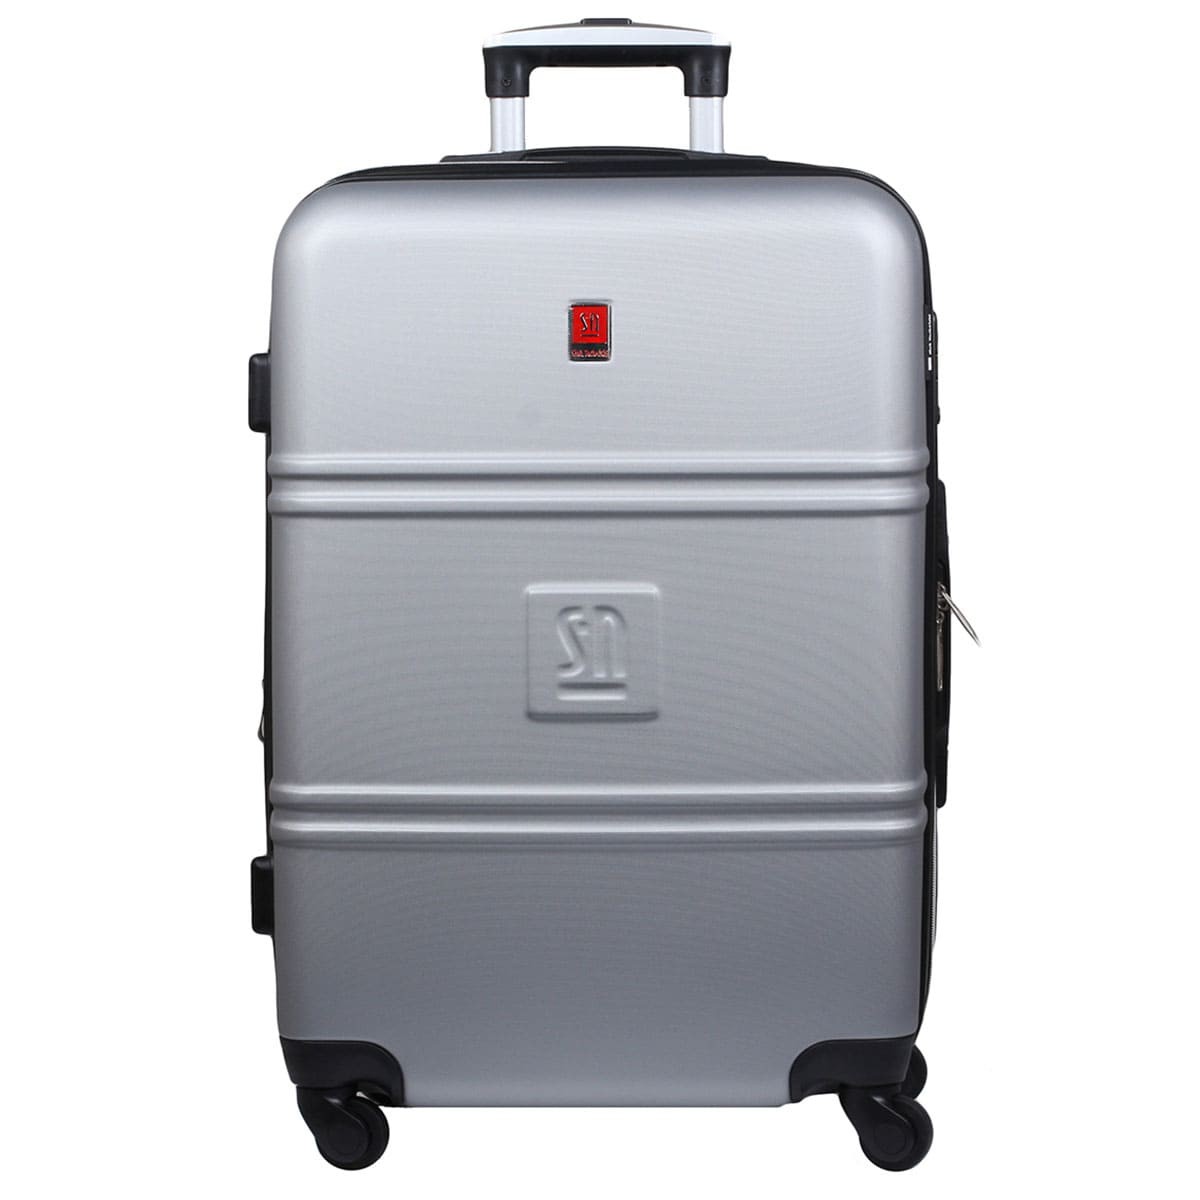 srebrna-walizka-podrozna-duza-na-kolkach-Art-Class-04-0411S-11.jpg